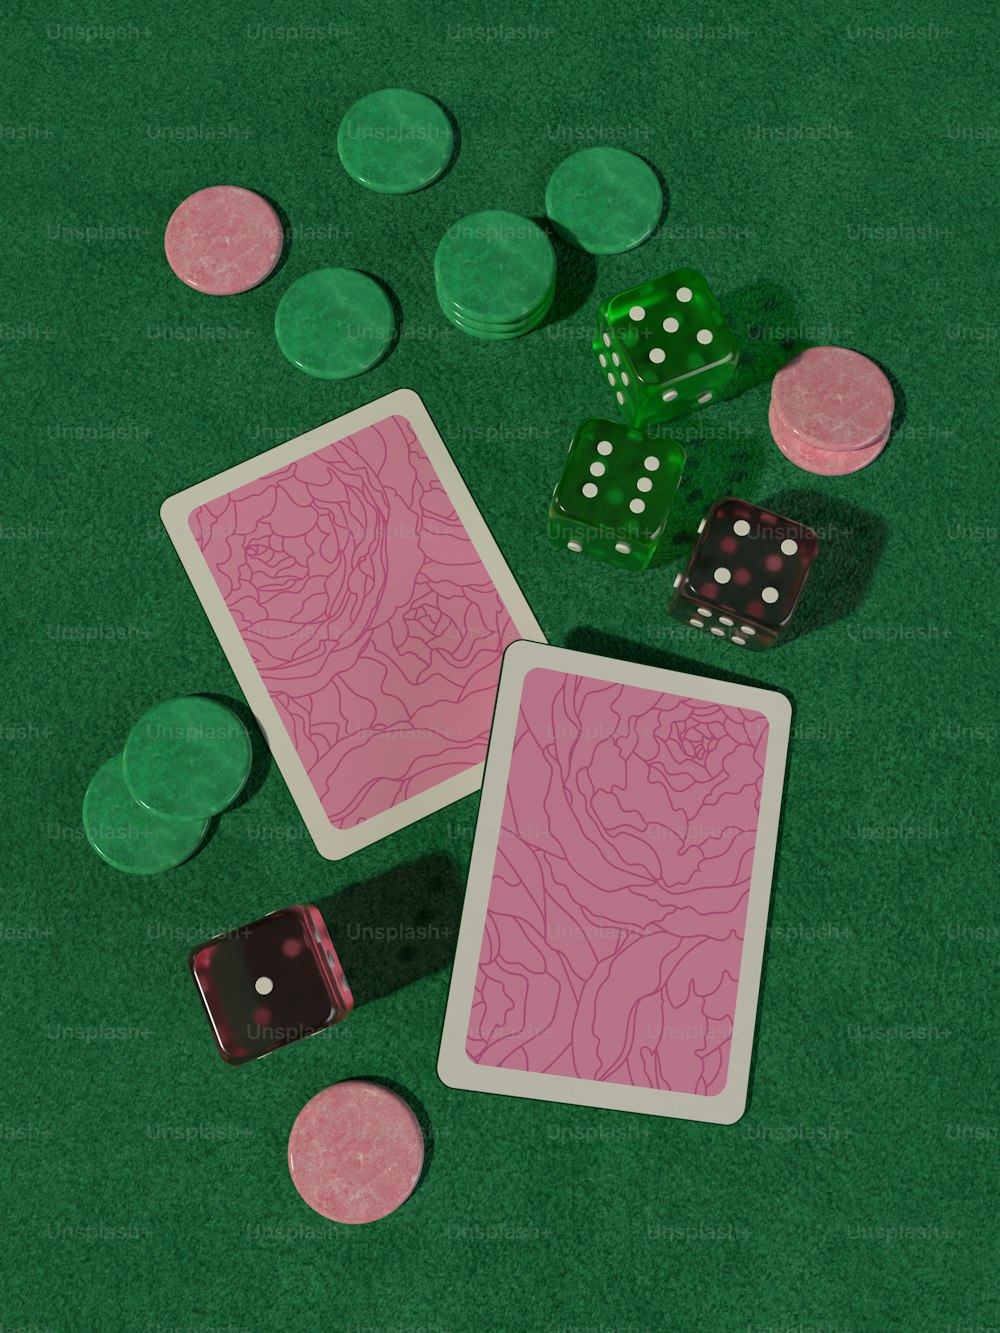 duas cartas de baralho e dois dados em uma mesa verde